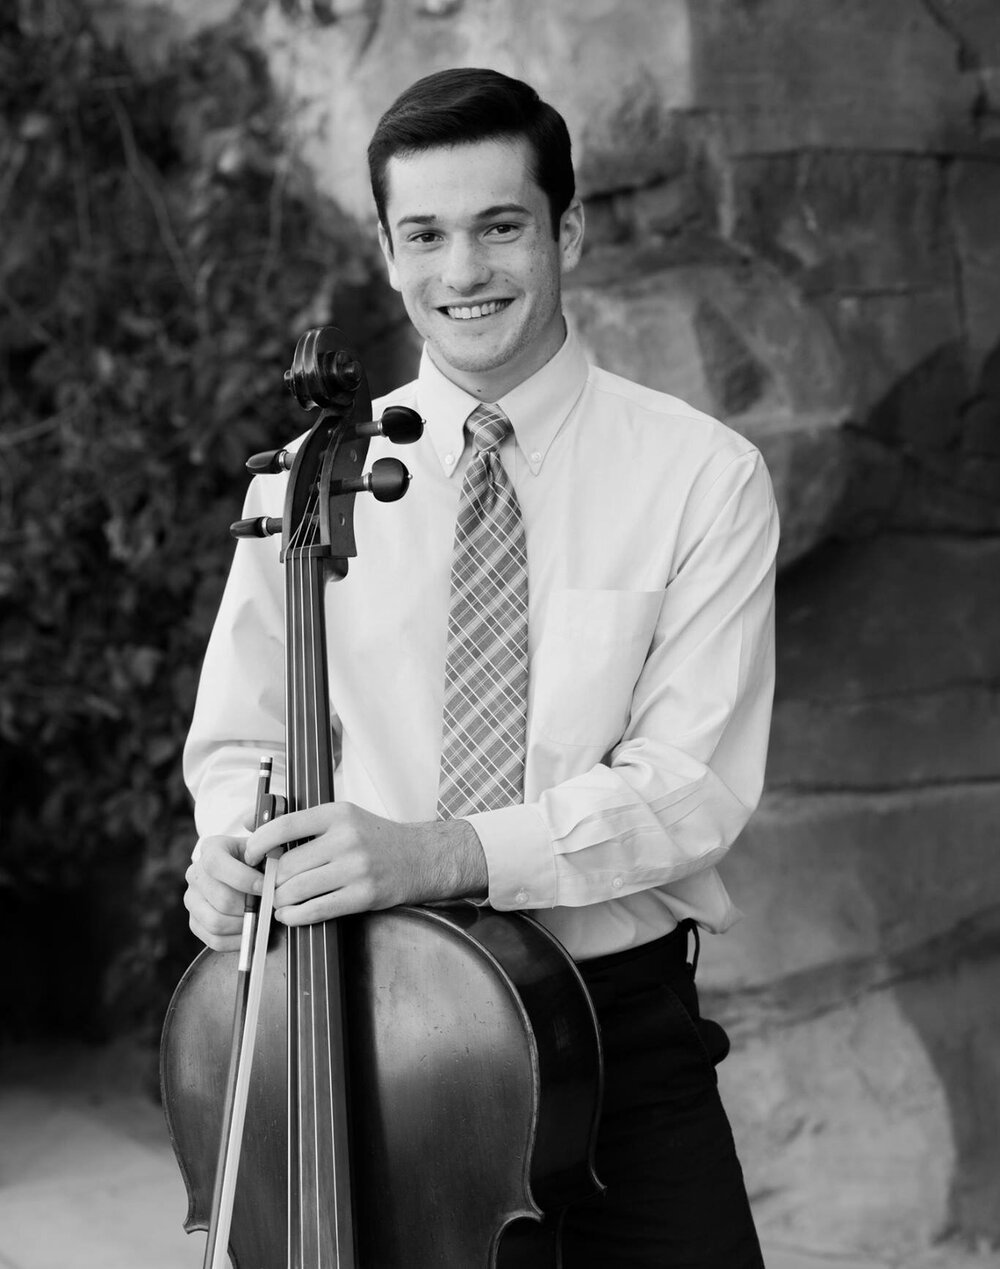 James Nackley - Cello